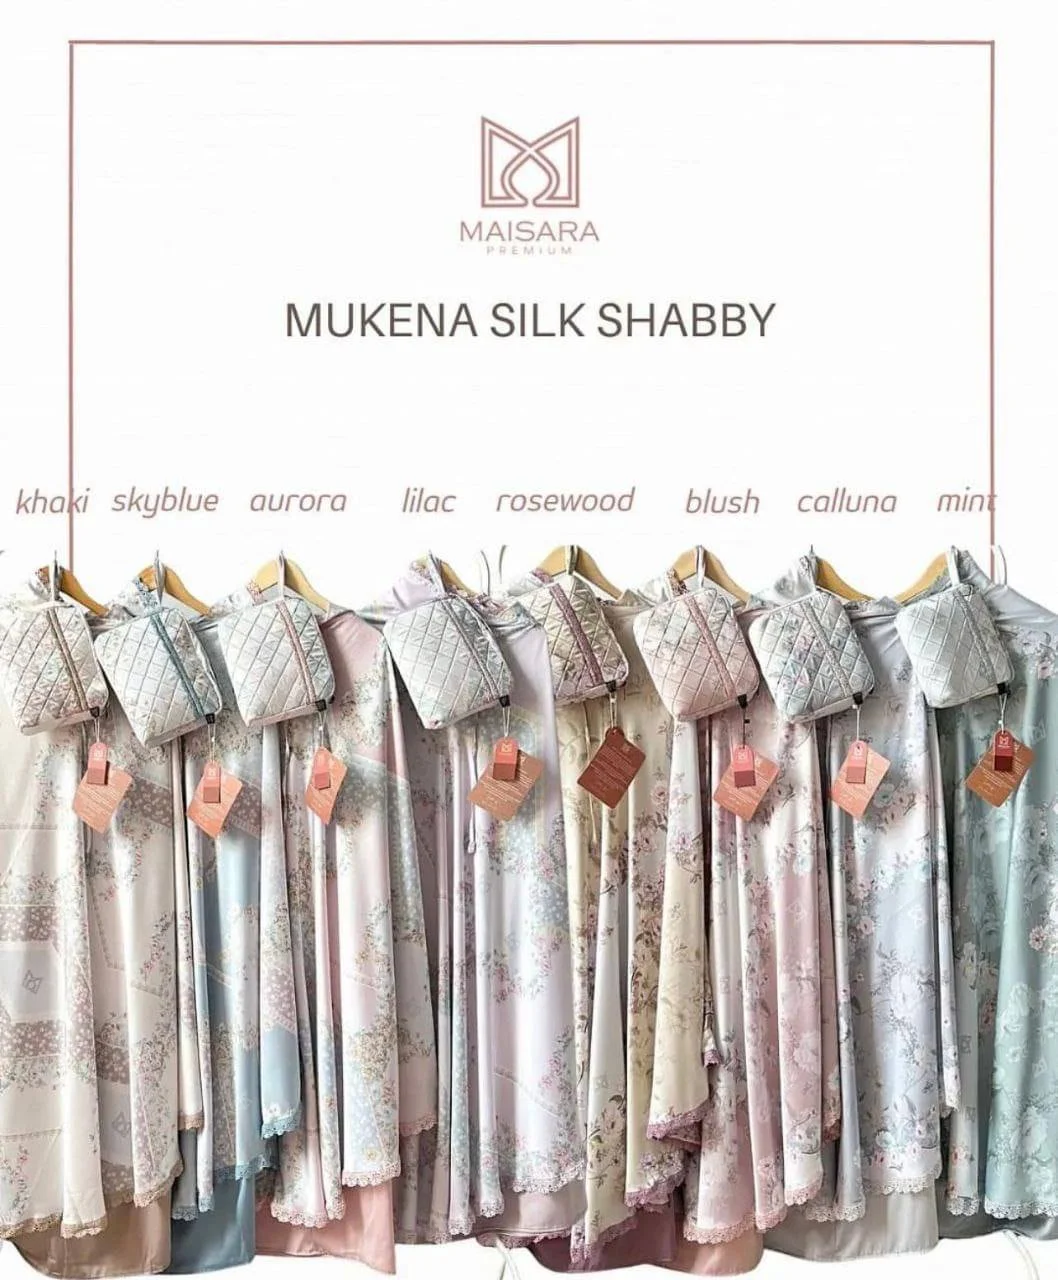 mukena silk shabby maisara katalog